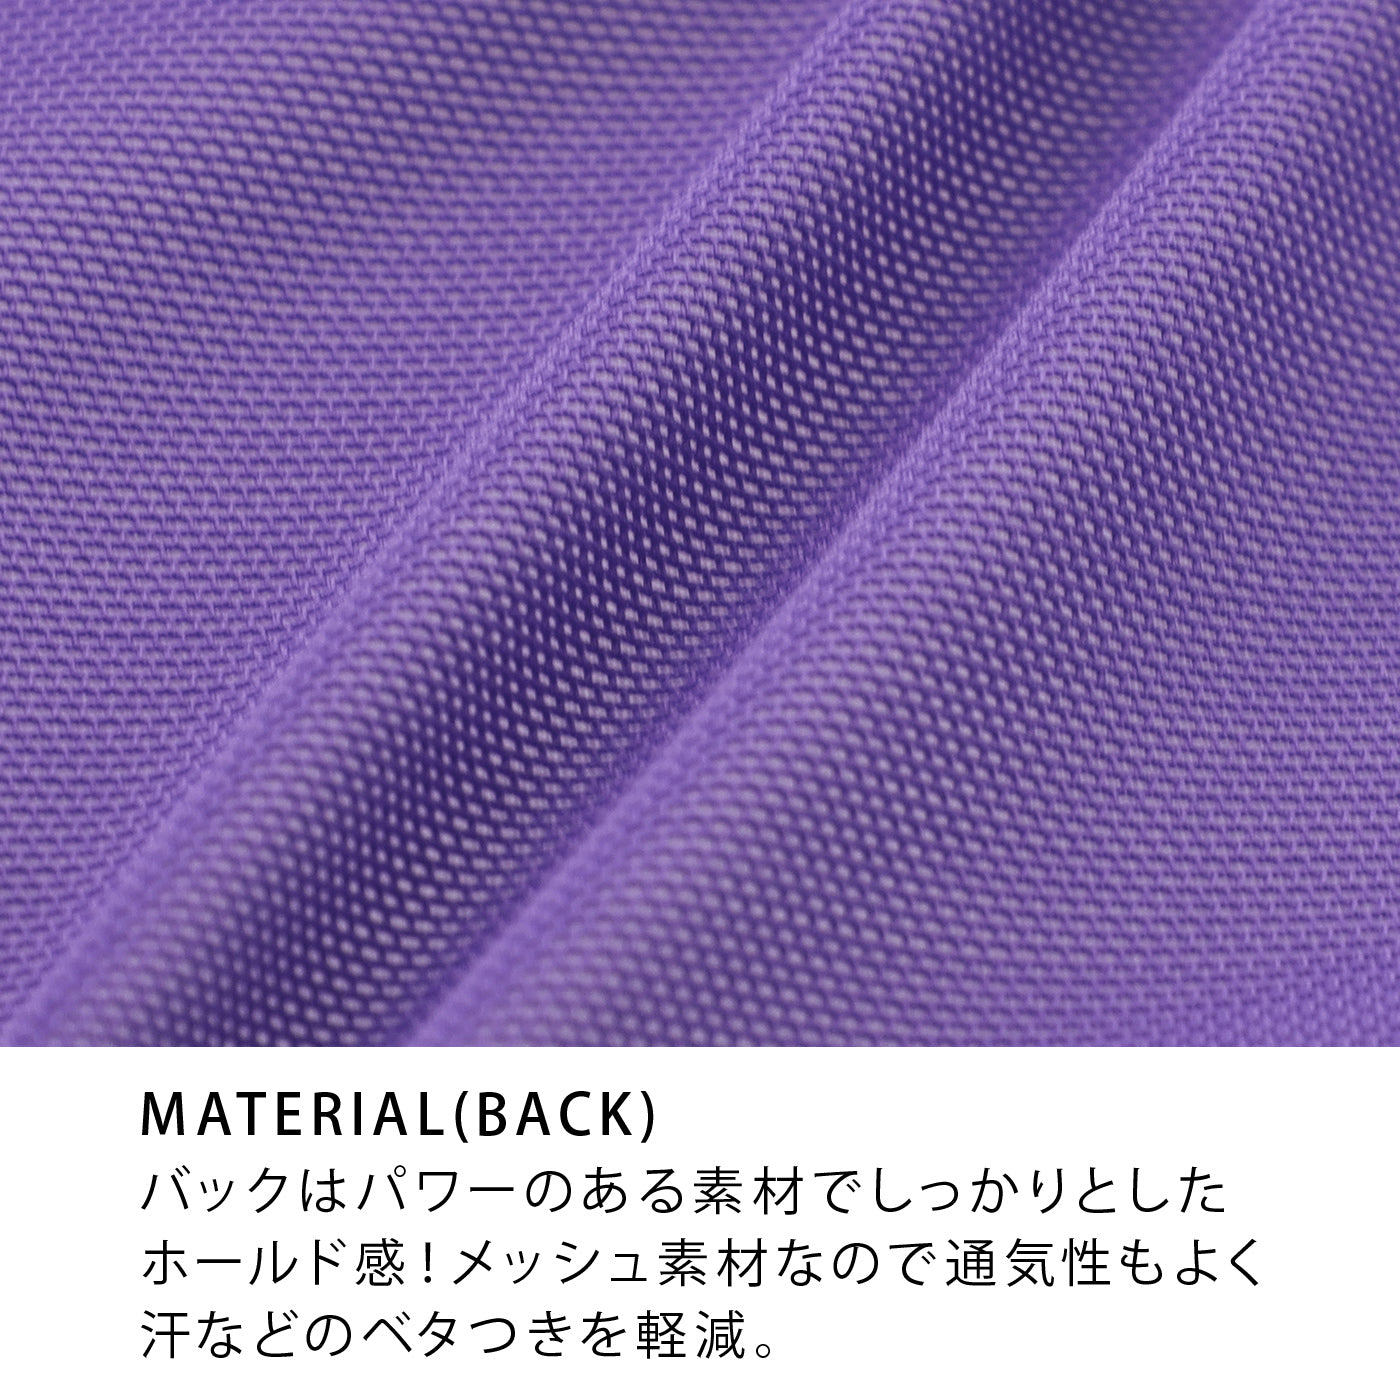 MATERIAL(BACK)バックはパワーのある素材でしっかりとしたホールド感！メッシュ素材なので通気性もよく汗などのベタつきを軽減。